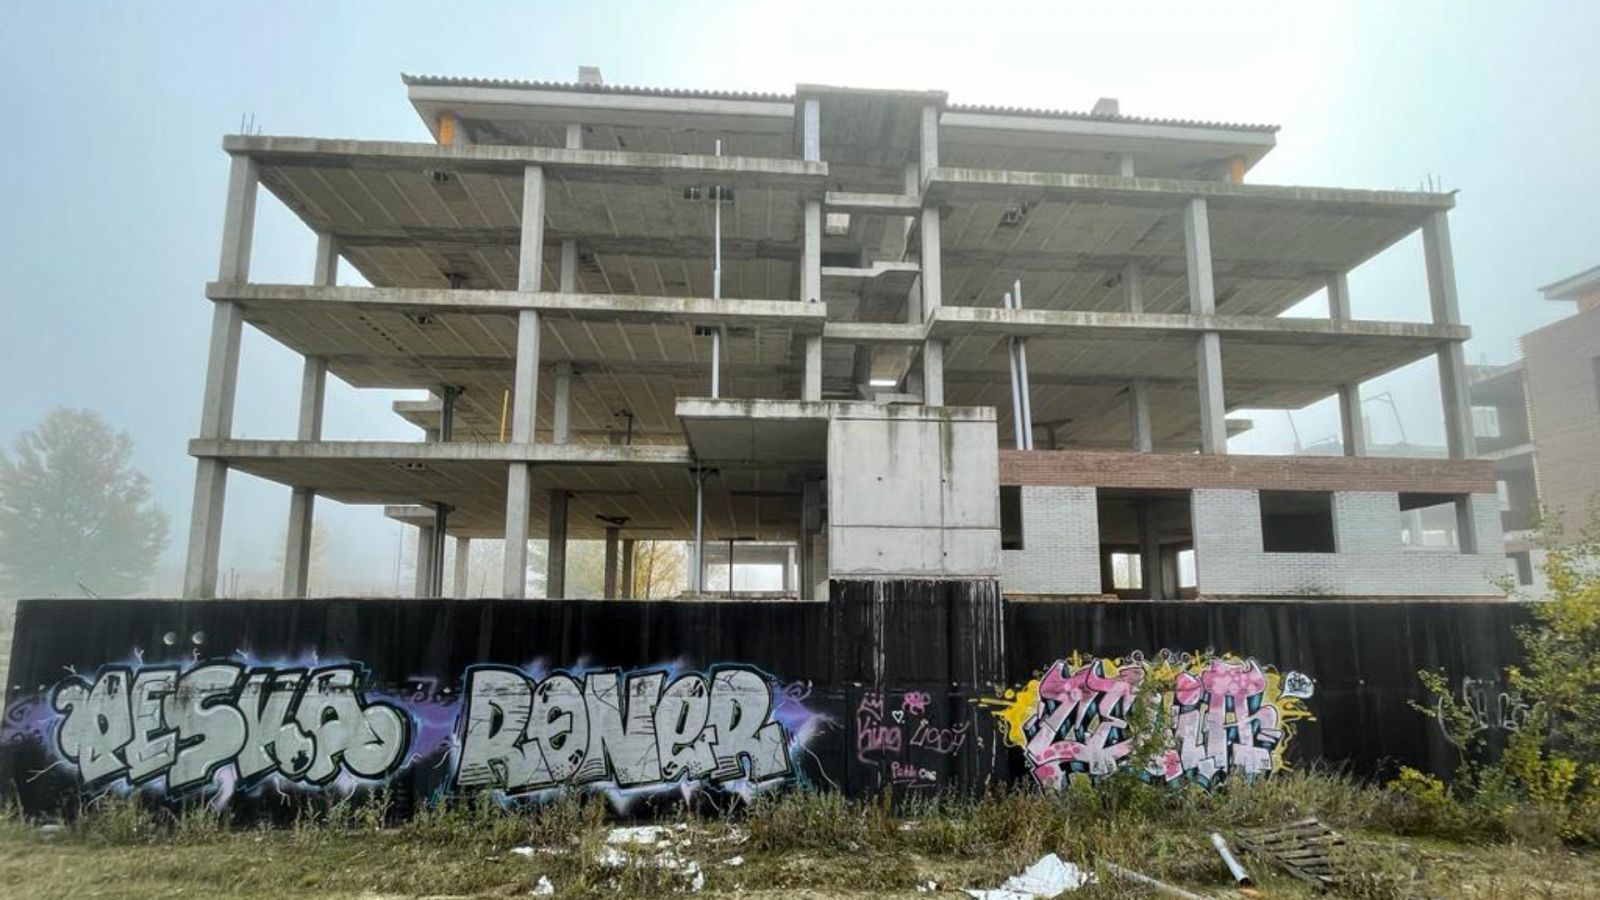 La urbanización fantasma de Buniel (Burgos) vandalizada